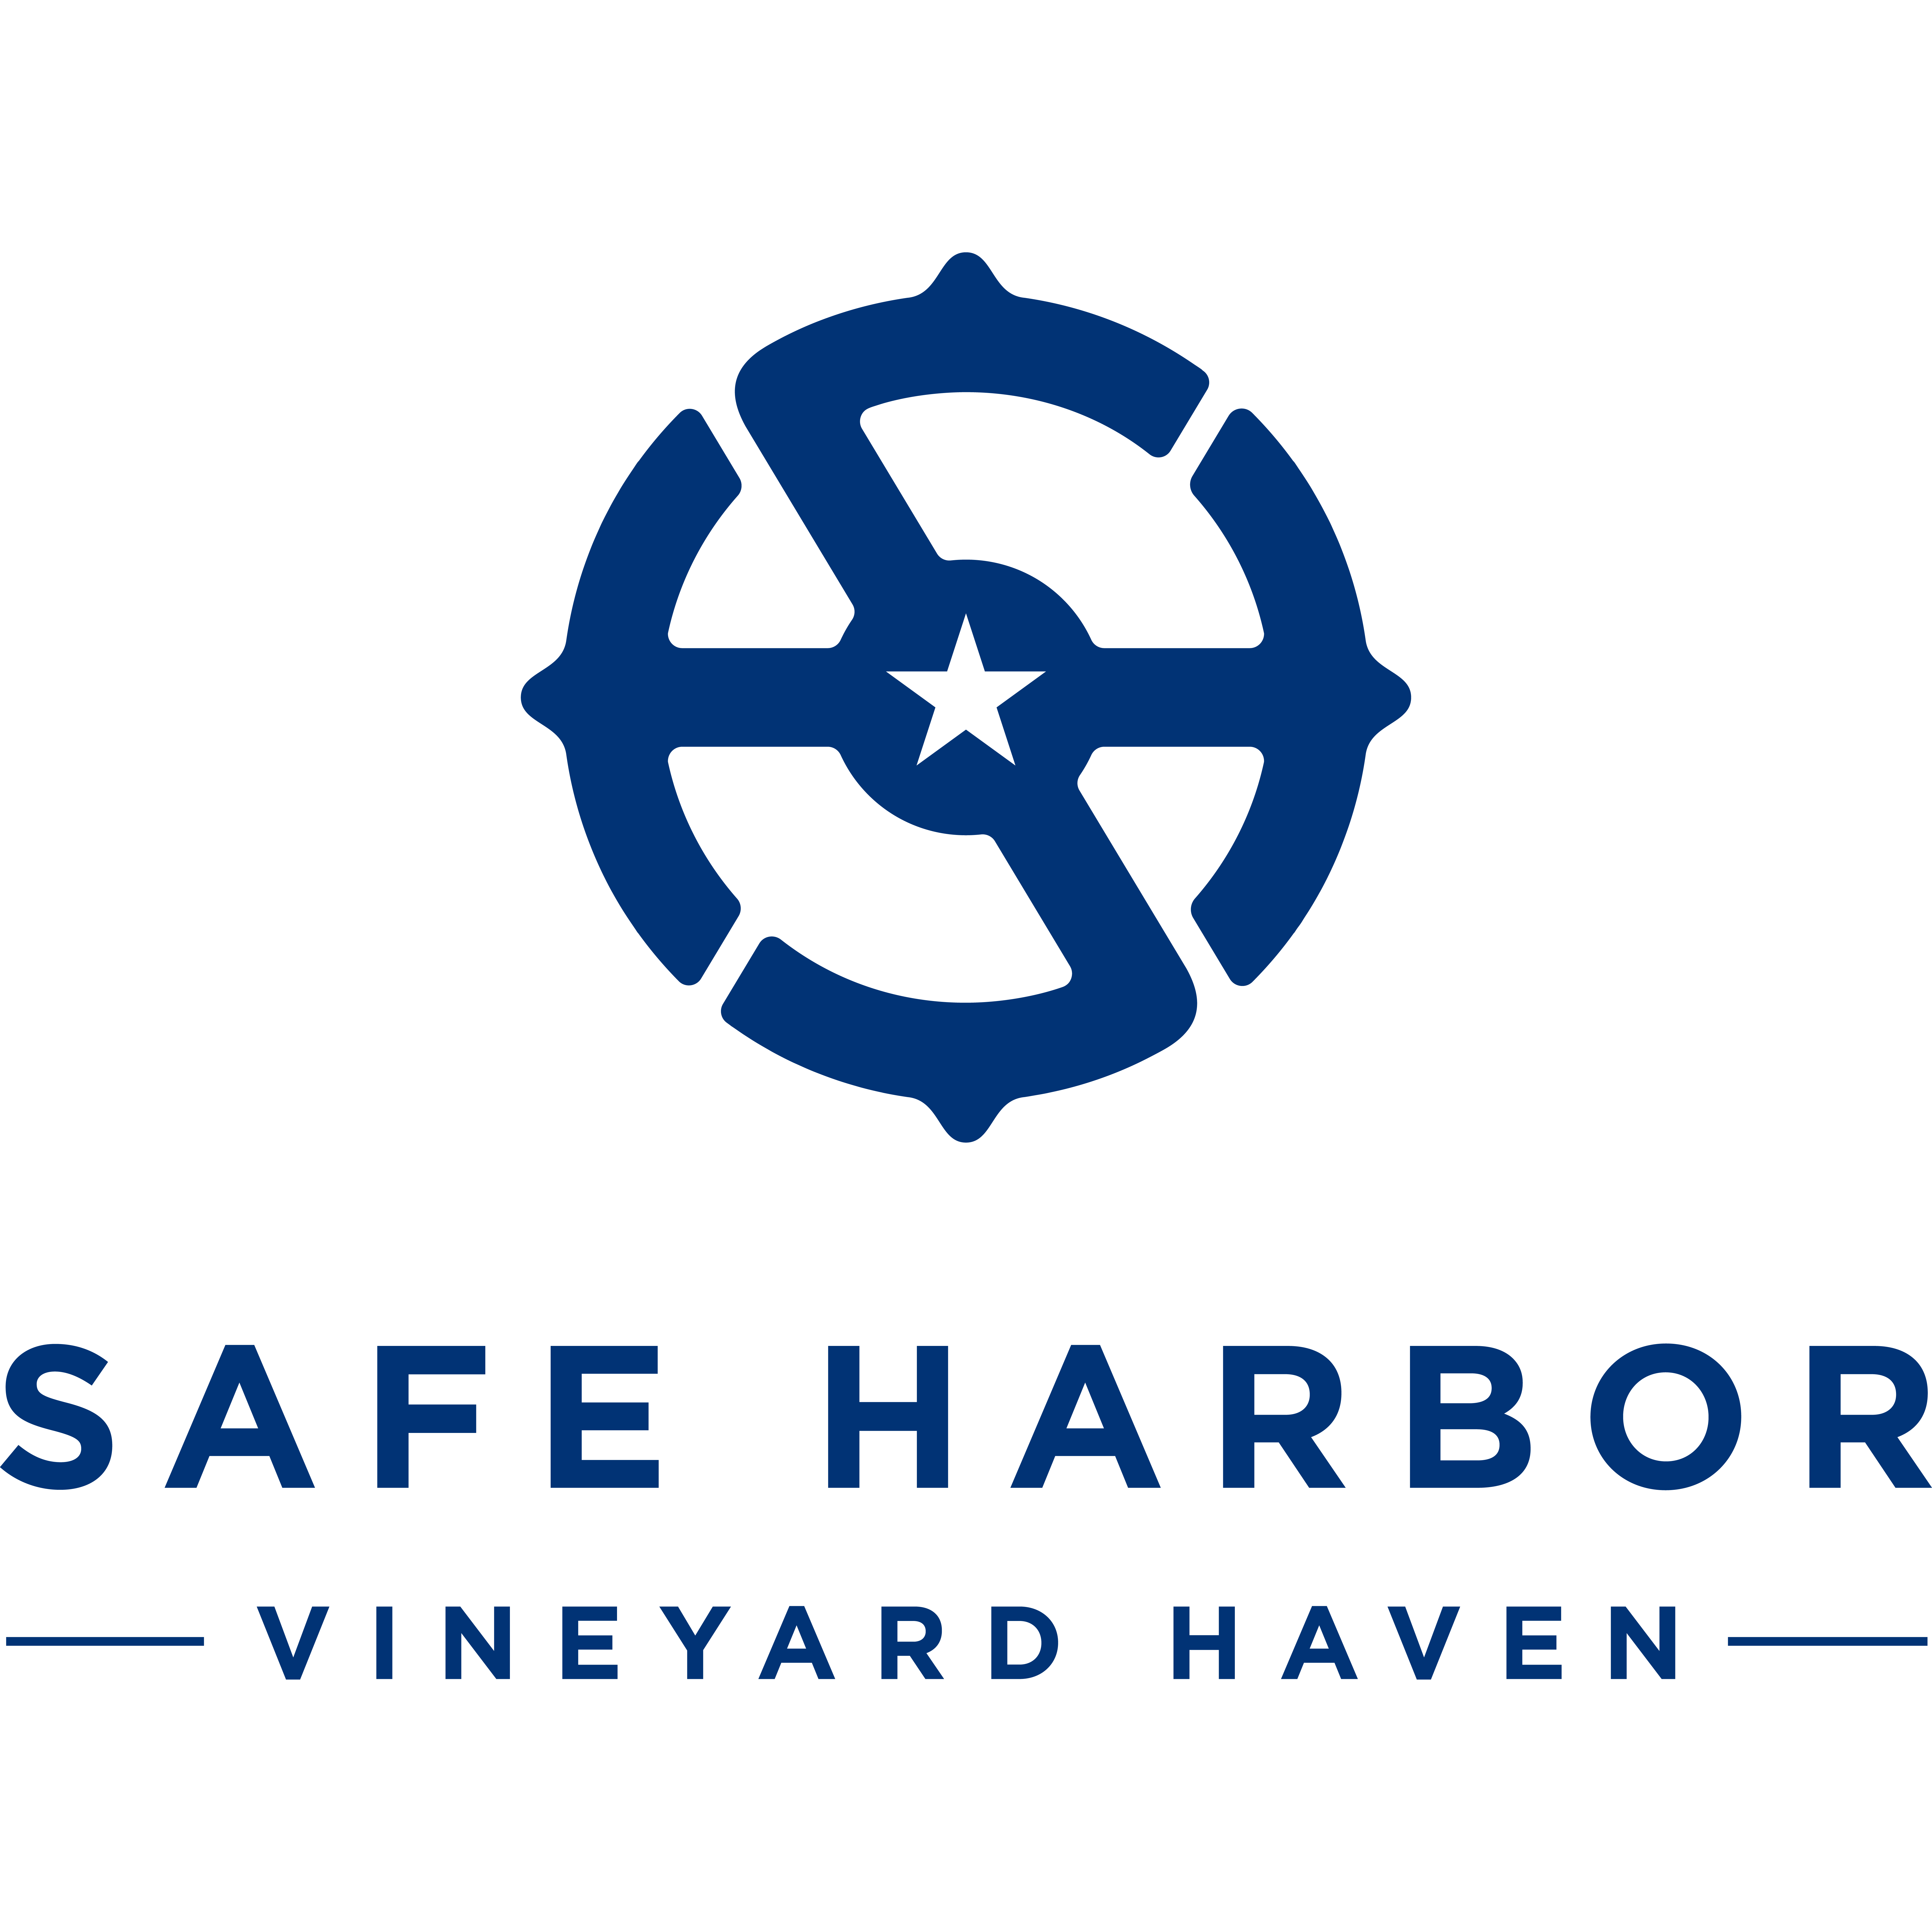 Safe Harbor Vineyard Haven